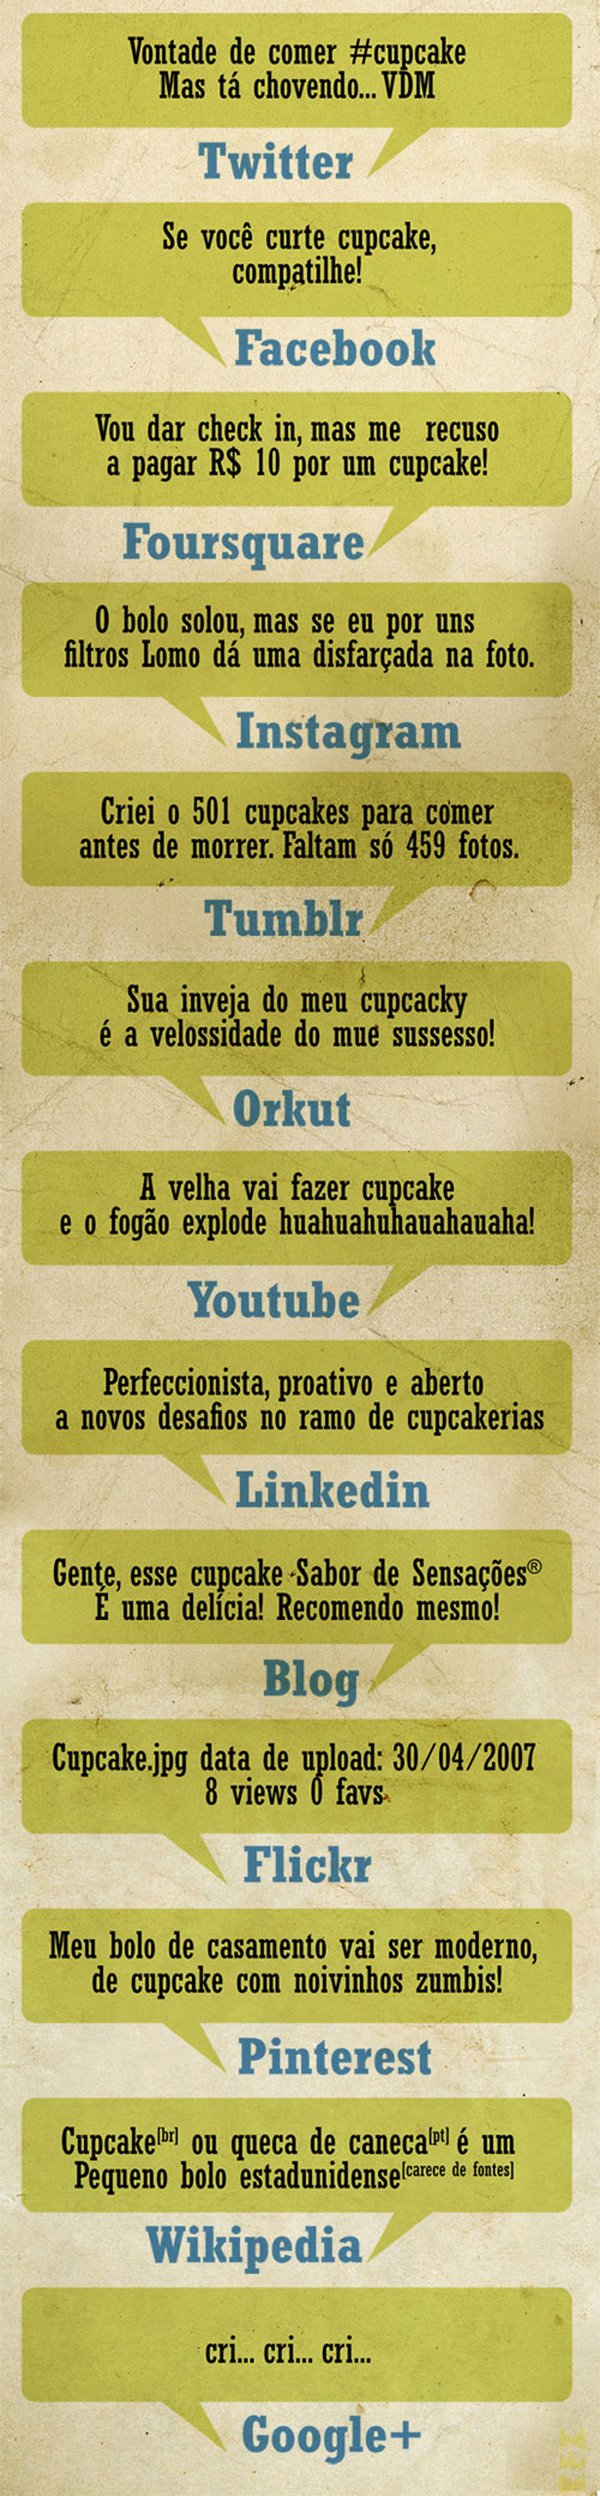 Explicando as redes sociais no Brasil